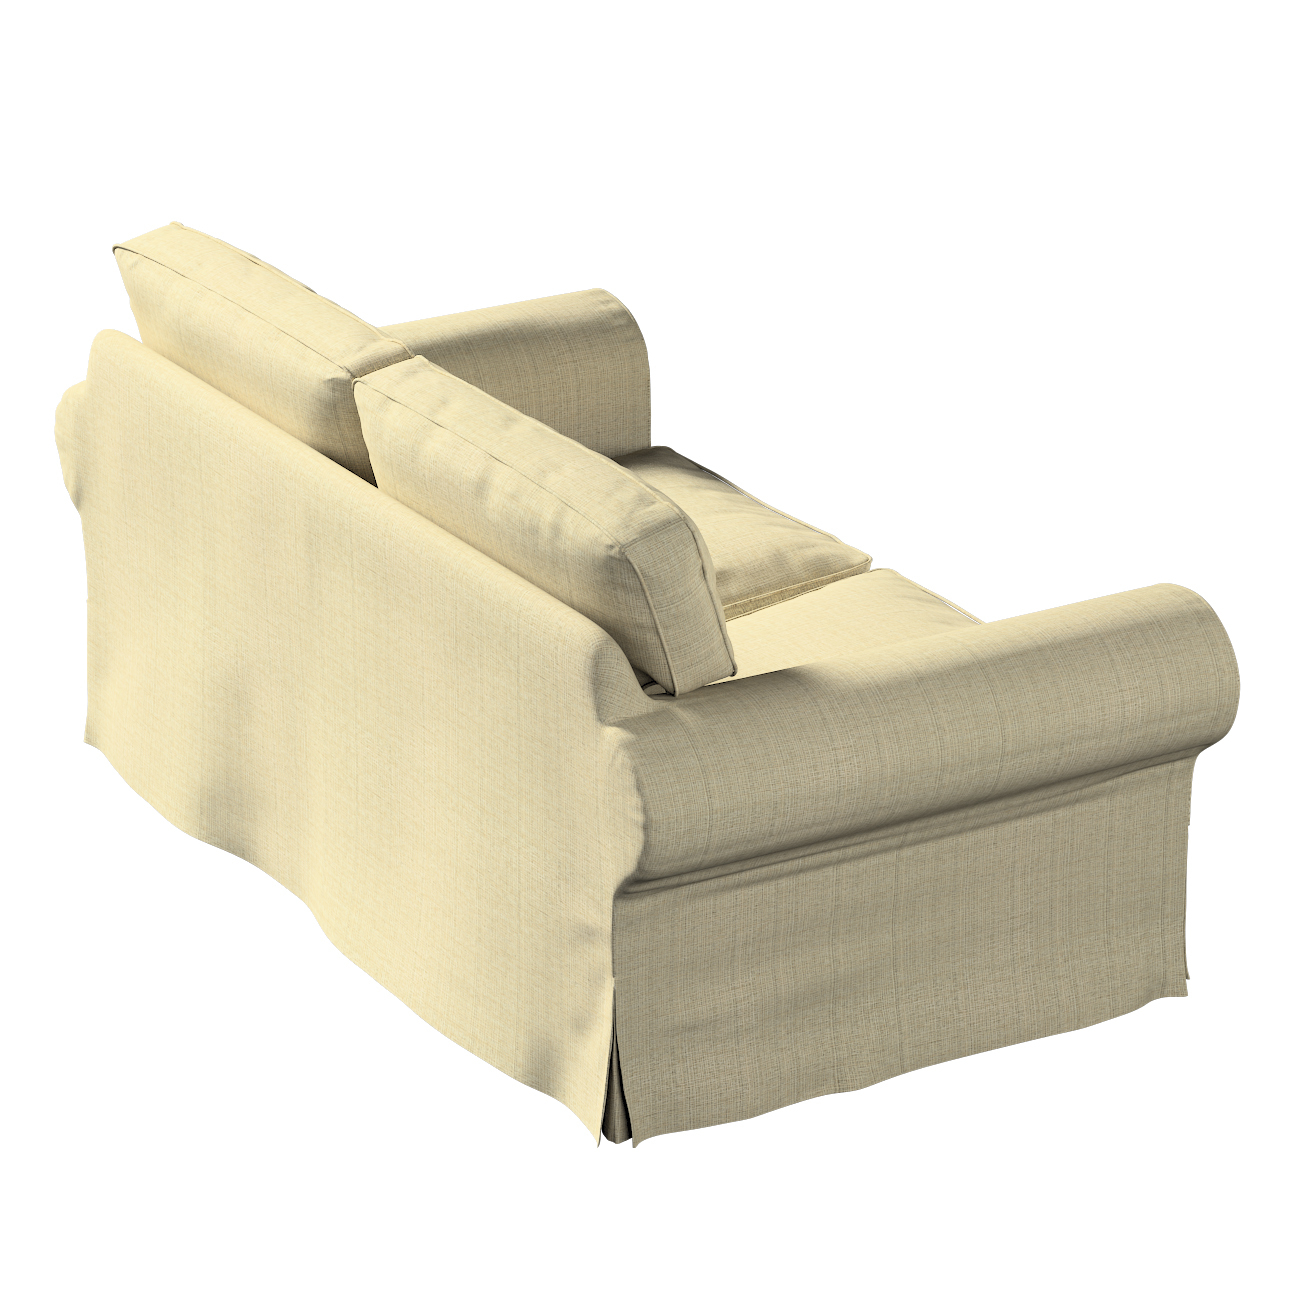 Bezug für Ektorp 2-Sitzer Schlafsofa NEUES Modell, beige-creme, Sofabezug f günstig online kaufen